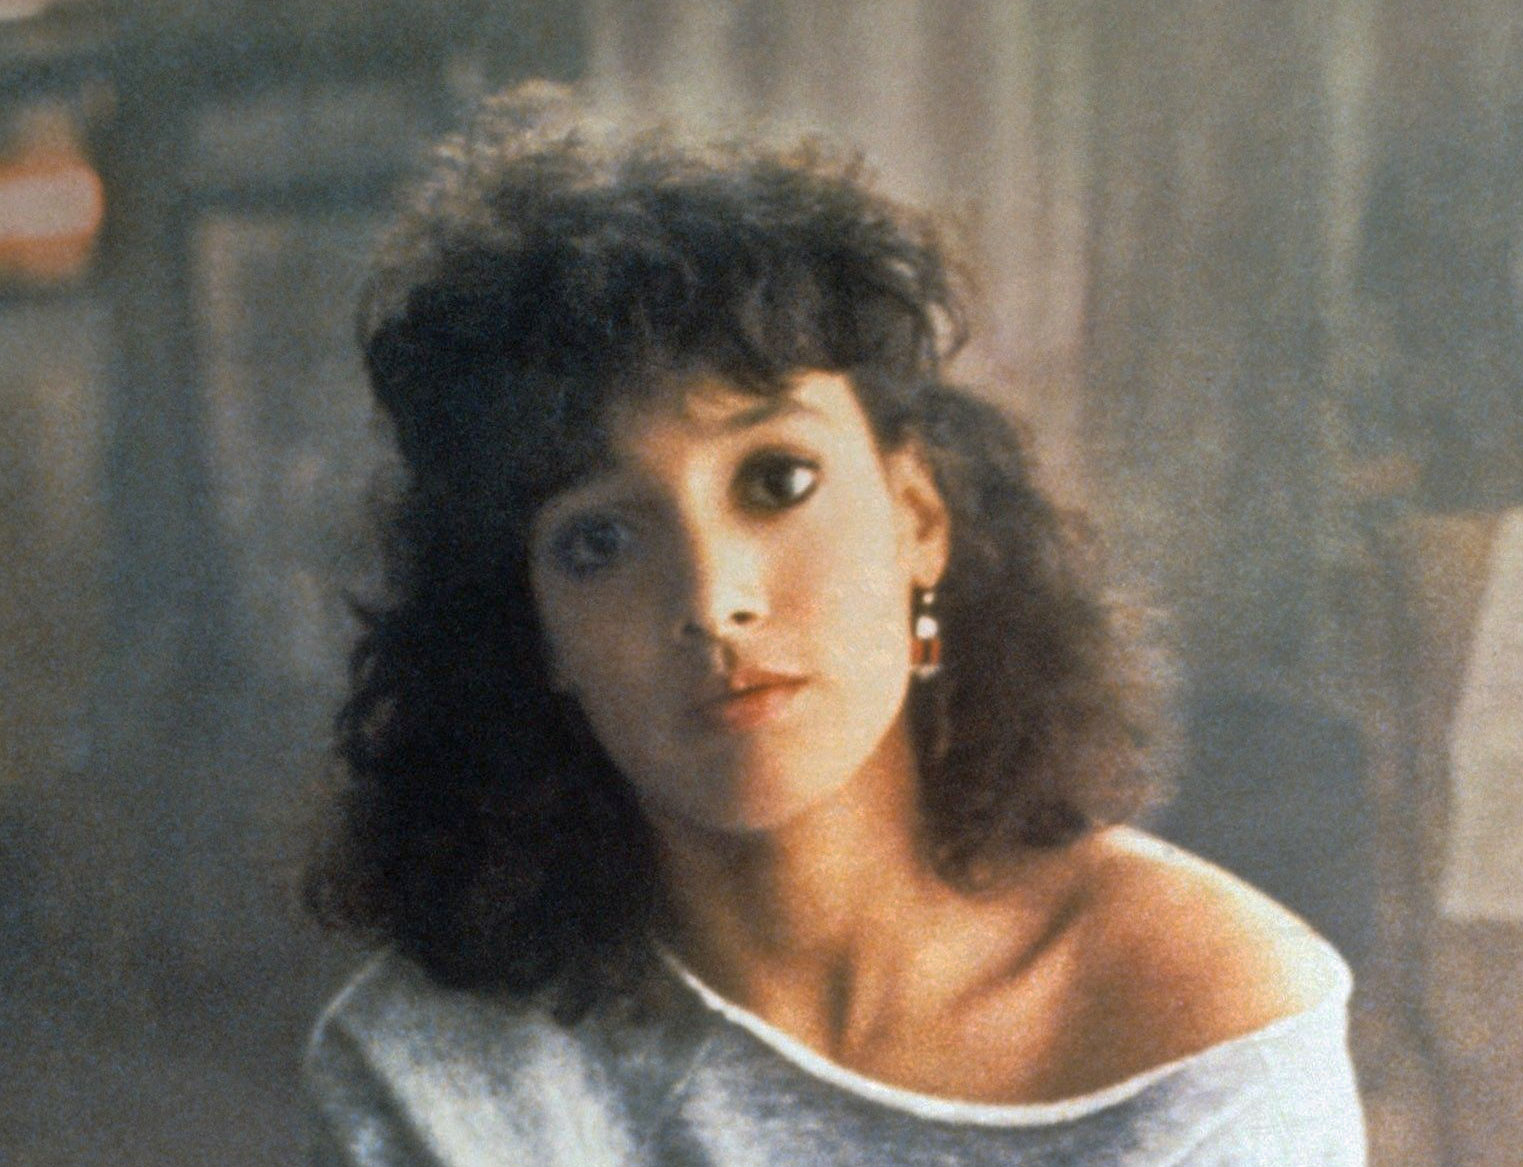 Flashdance fra 1983 med Jennifer Beals får reboot via streamingtjenesten Paramount Plus (Paramount)